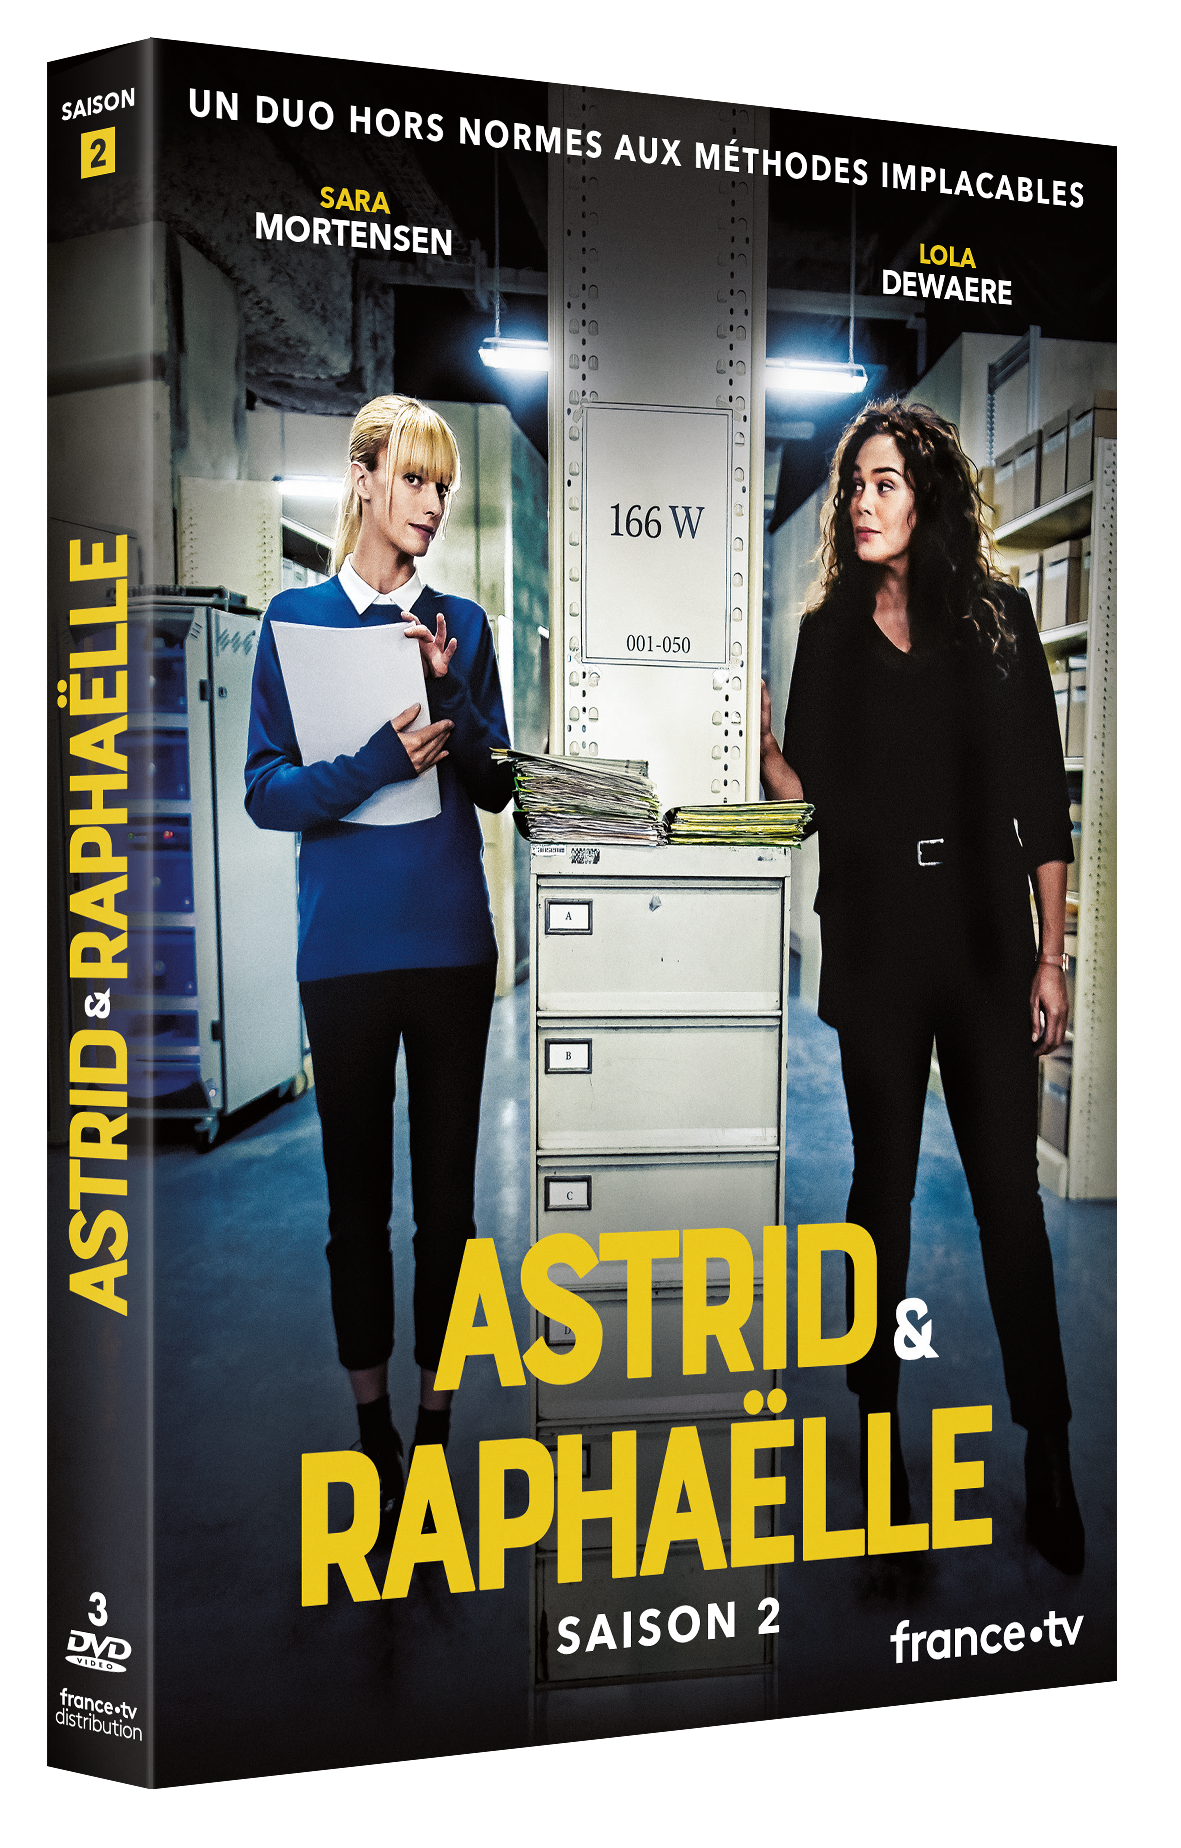 DVD Astrid & Raphaelle S2